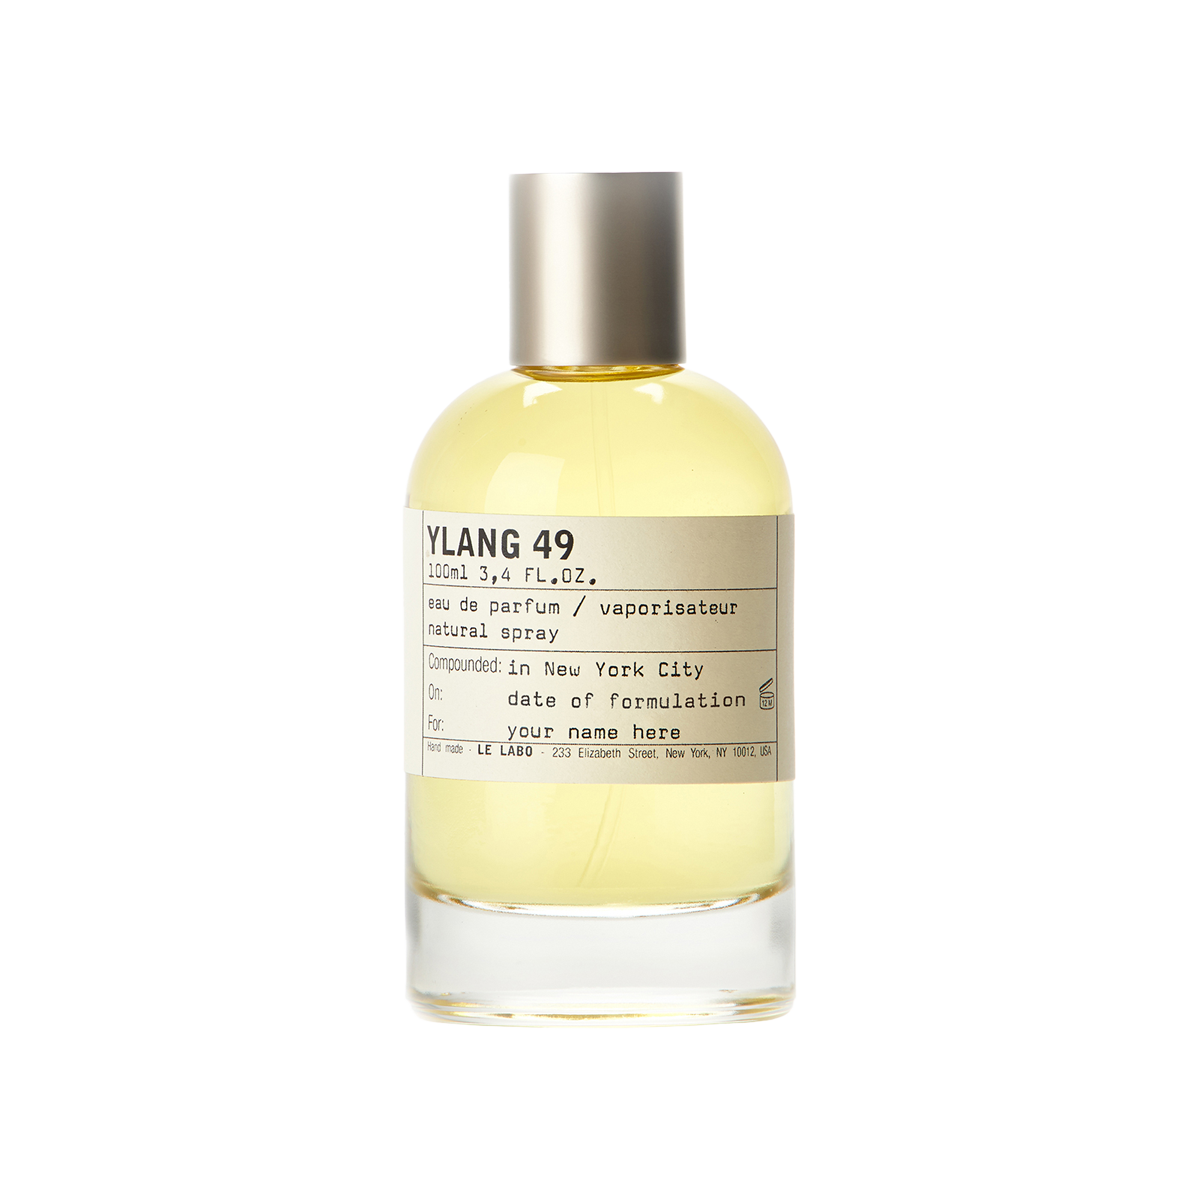 Le Labo fragrances - Ylang 49 Eau de Parfum